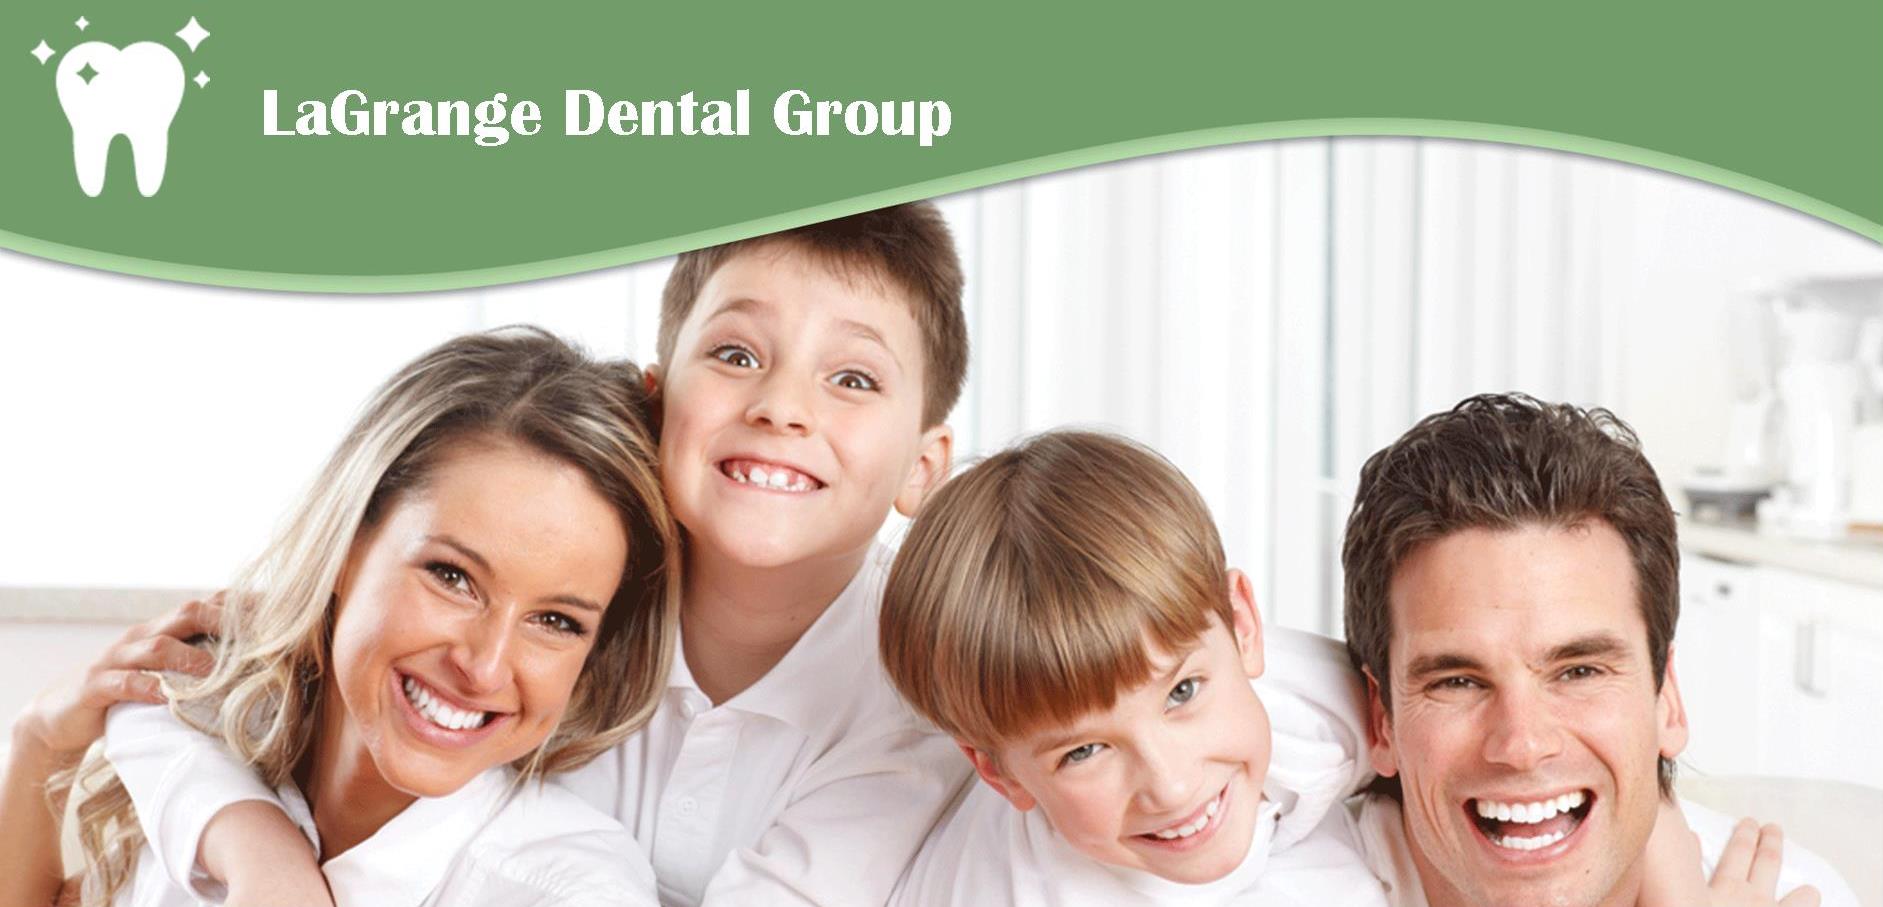 LaGrange Dental Group